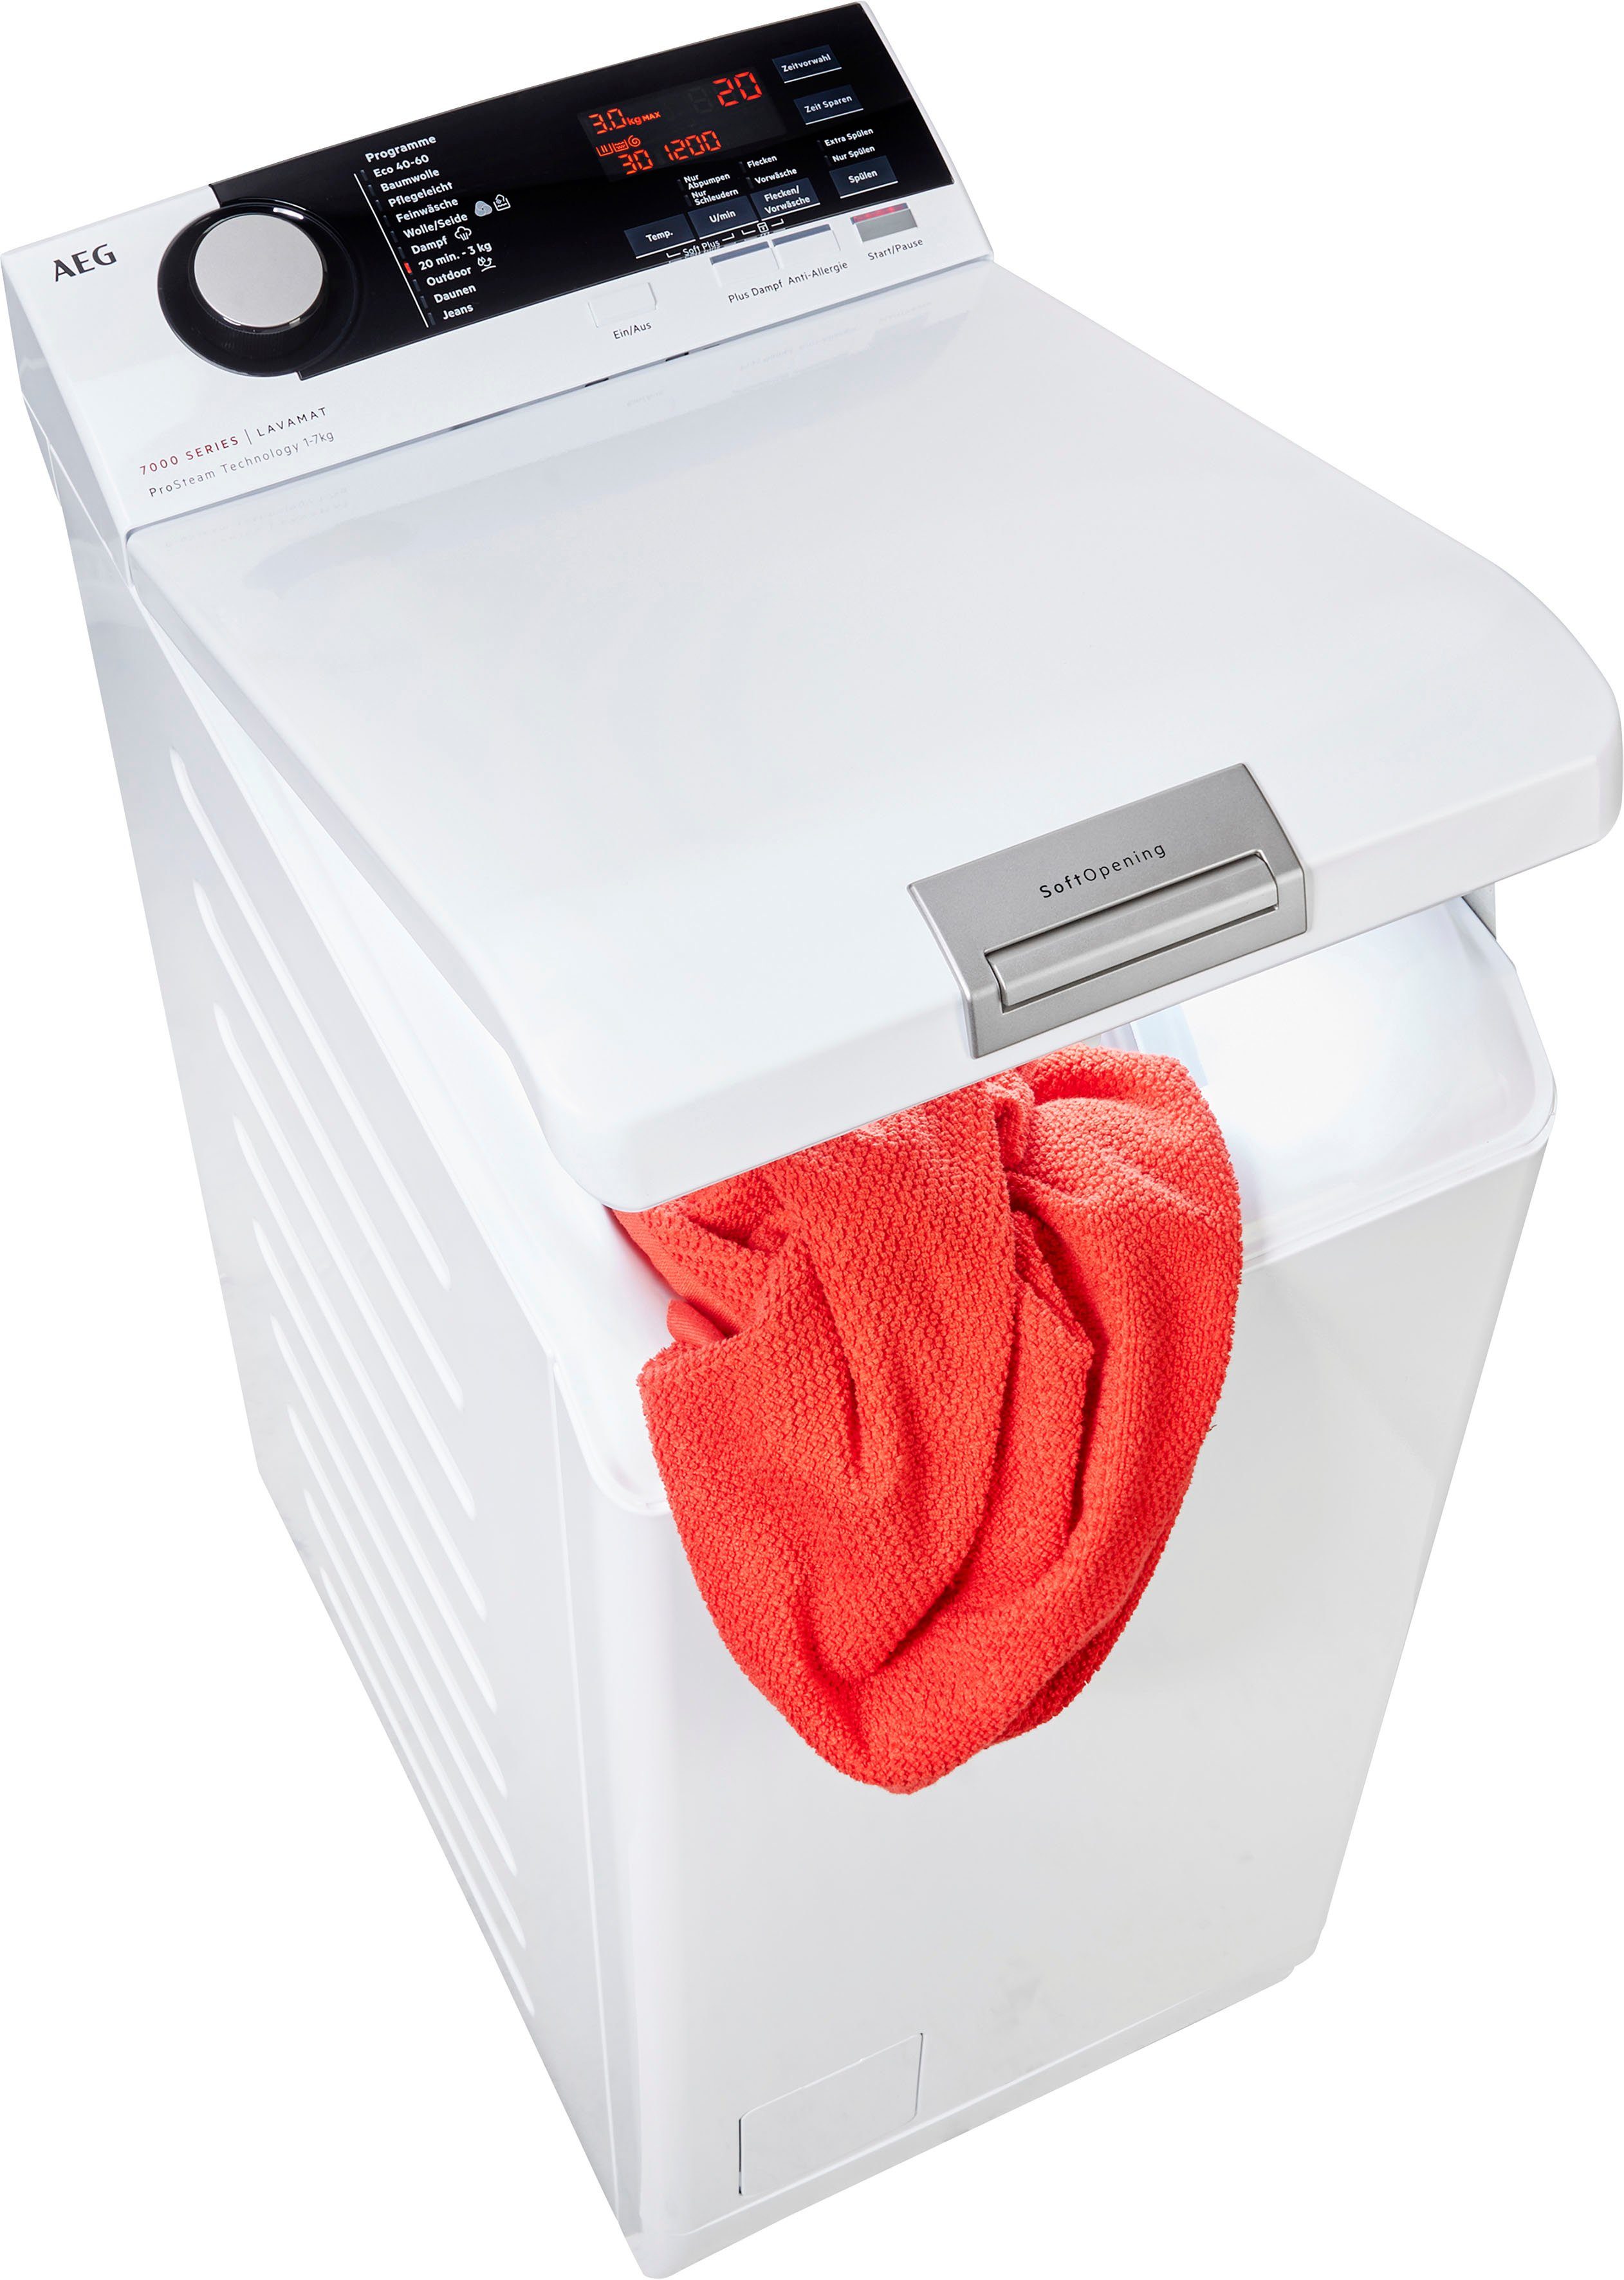 AEG Waschmaschine 7kg online kaufen | OTTO